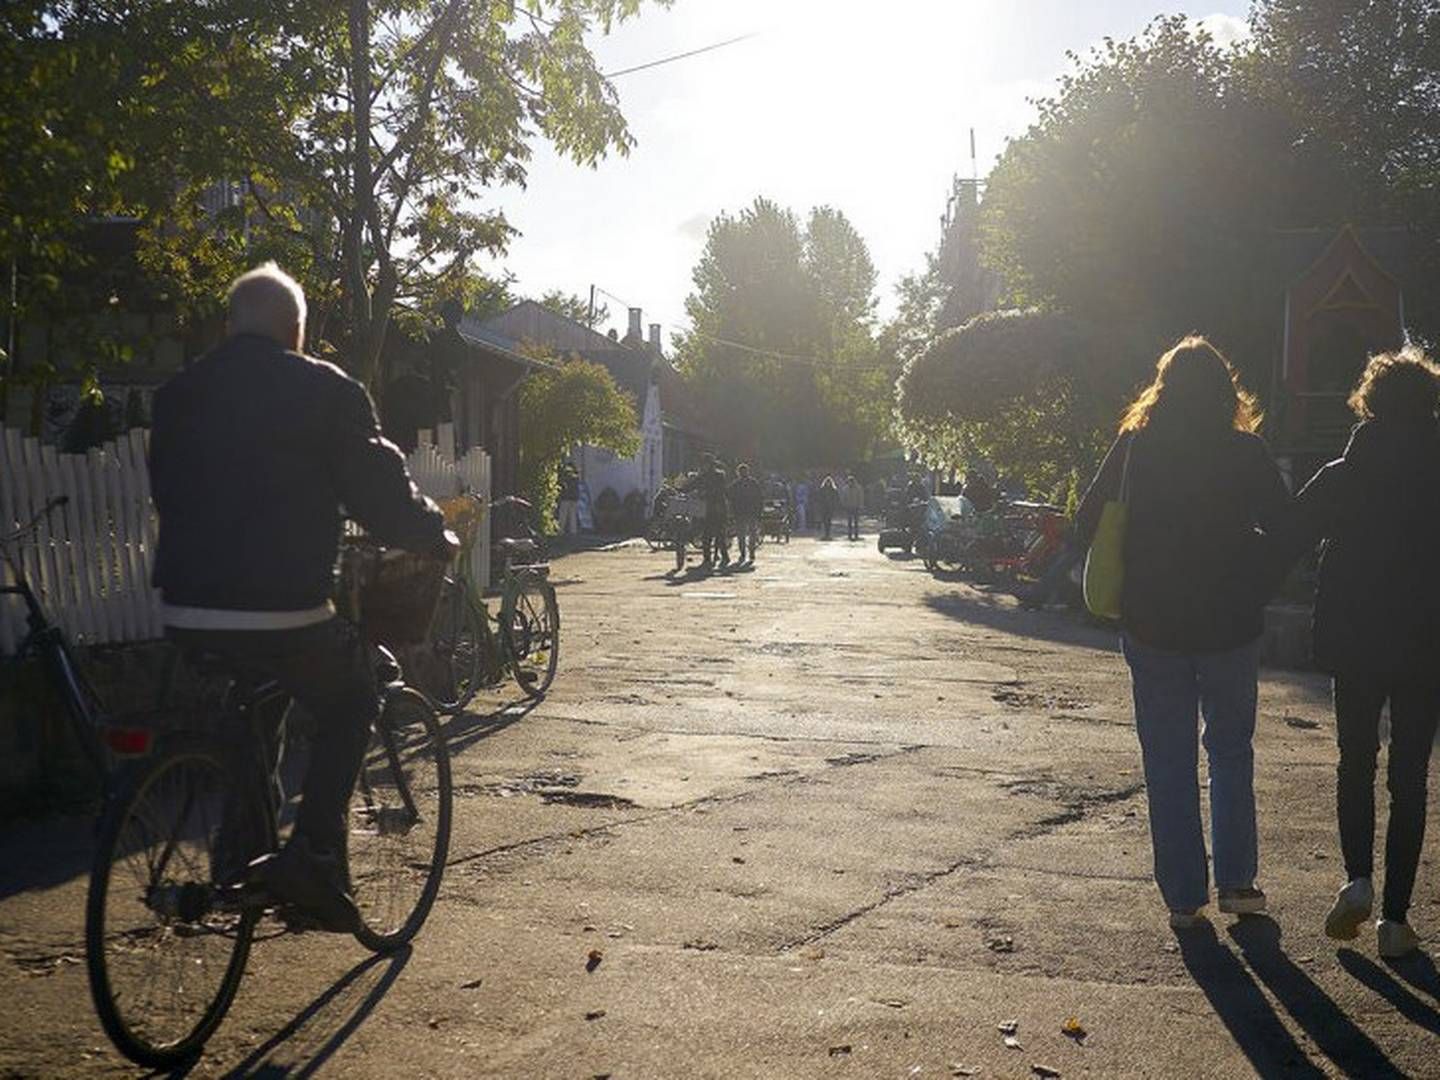 Nye naboer. Christiania kan se frem til yde sit bidrag til, at København får flere almene boliger. | Foto: Niels Ahlmann Olesen / Ritzau Scanpix